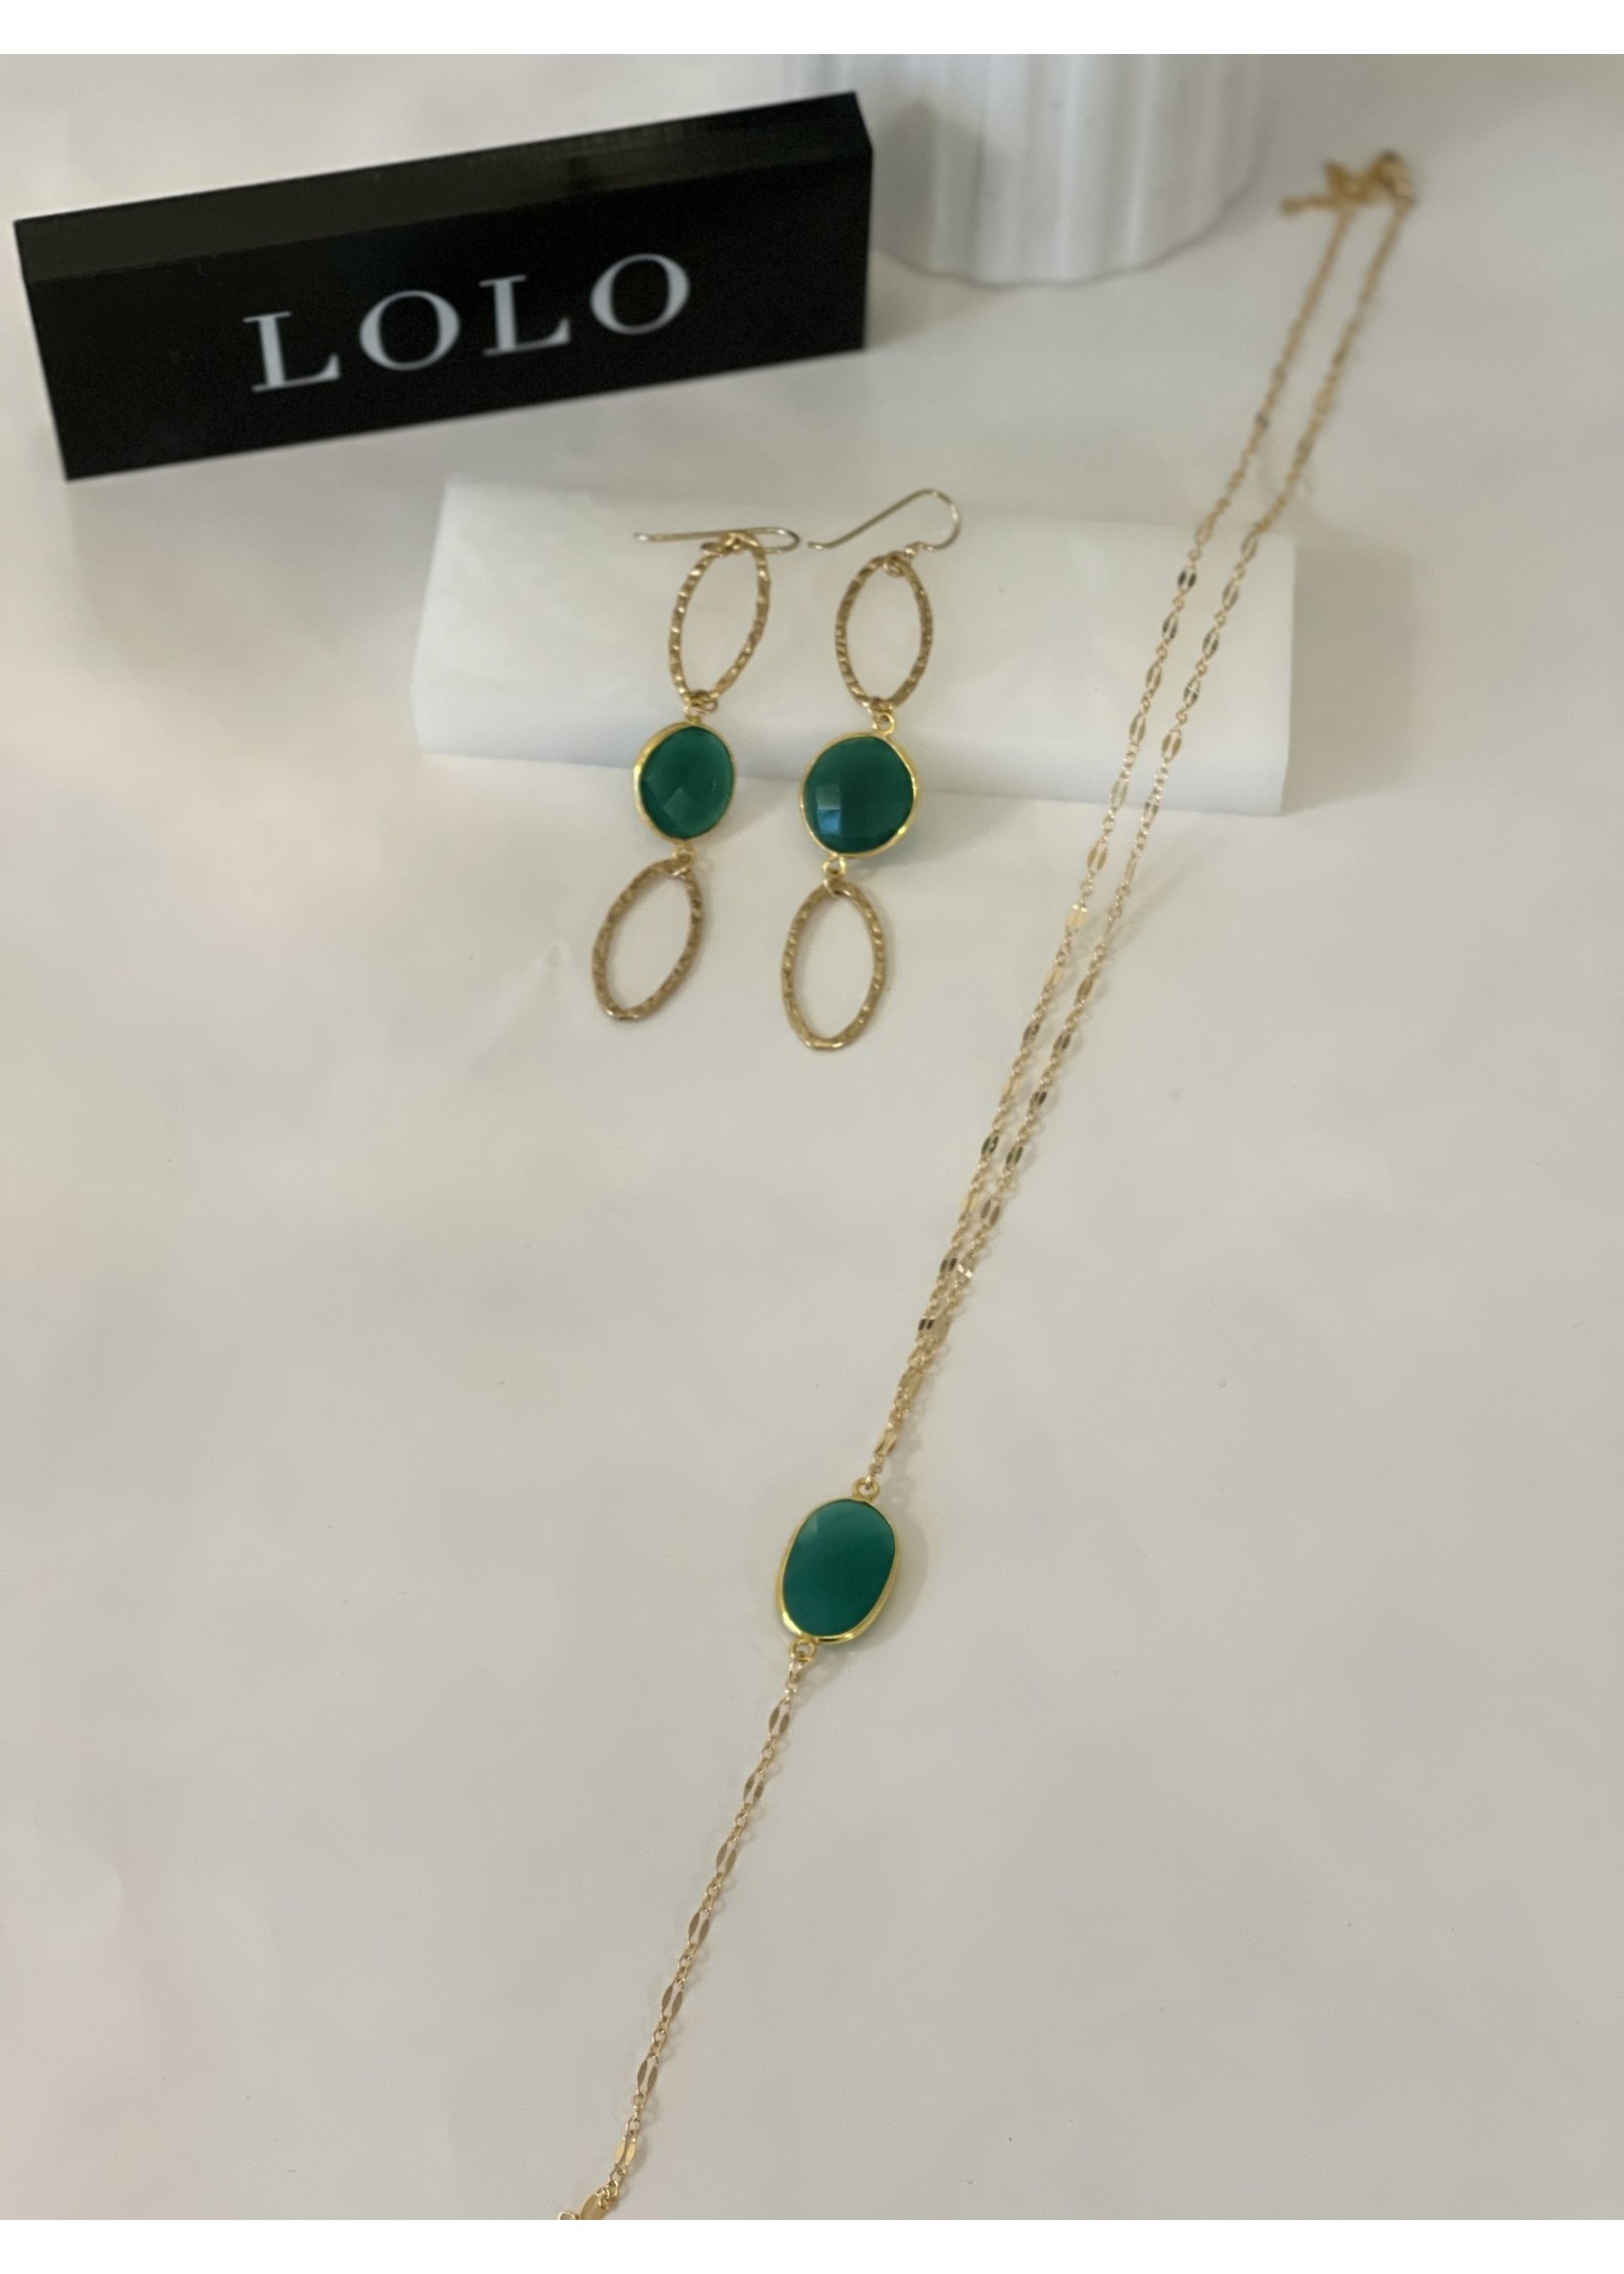 Lolo LOLO Oval Stone Hoop Earrings - Green Onyx